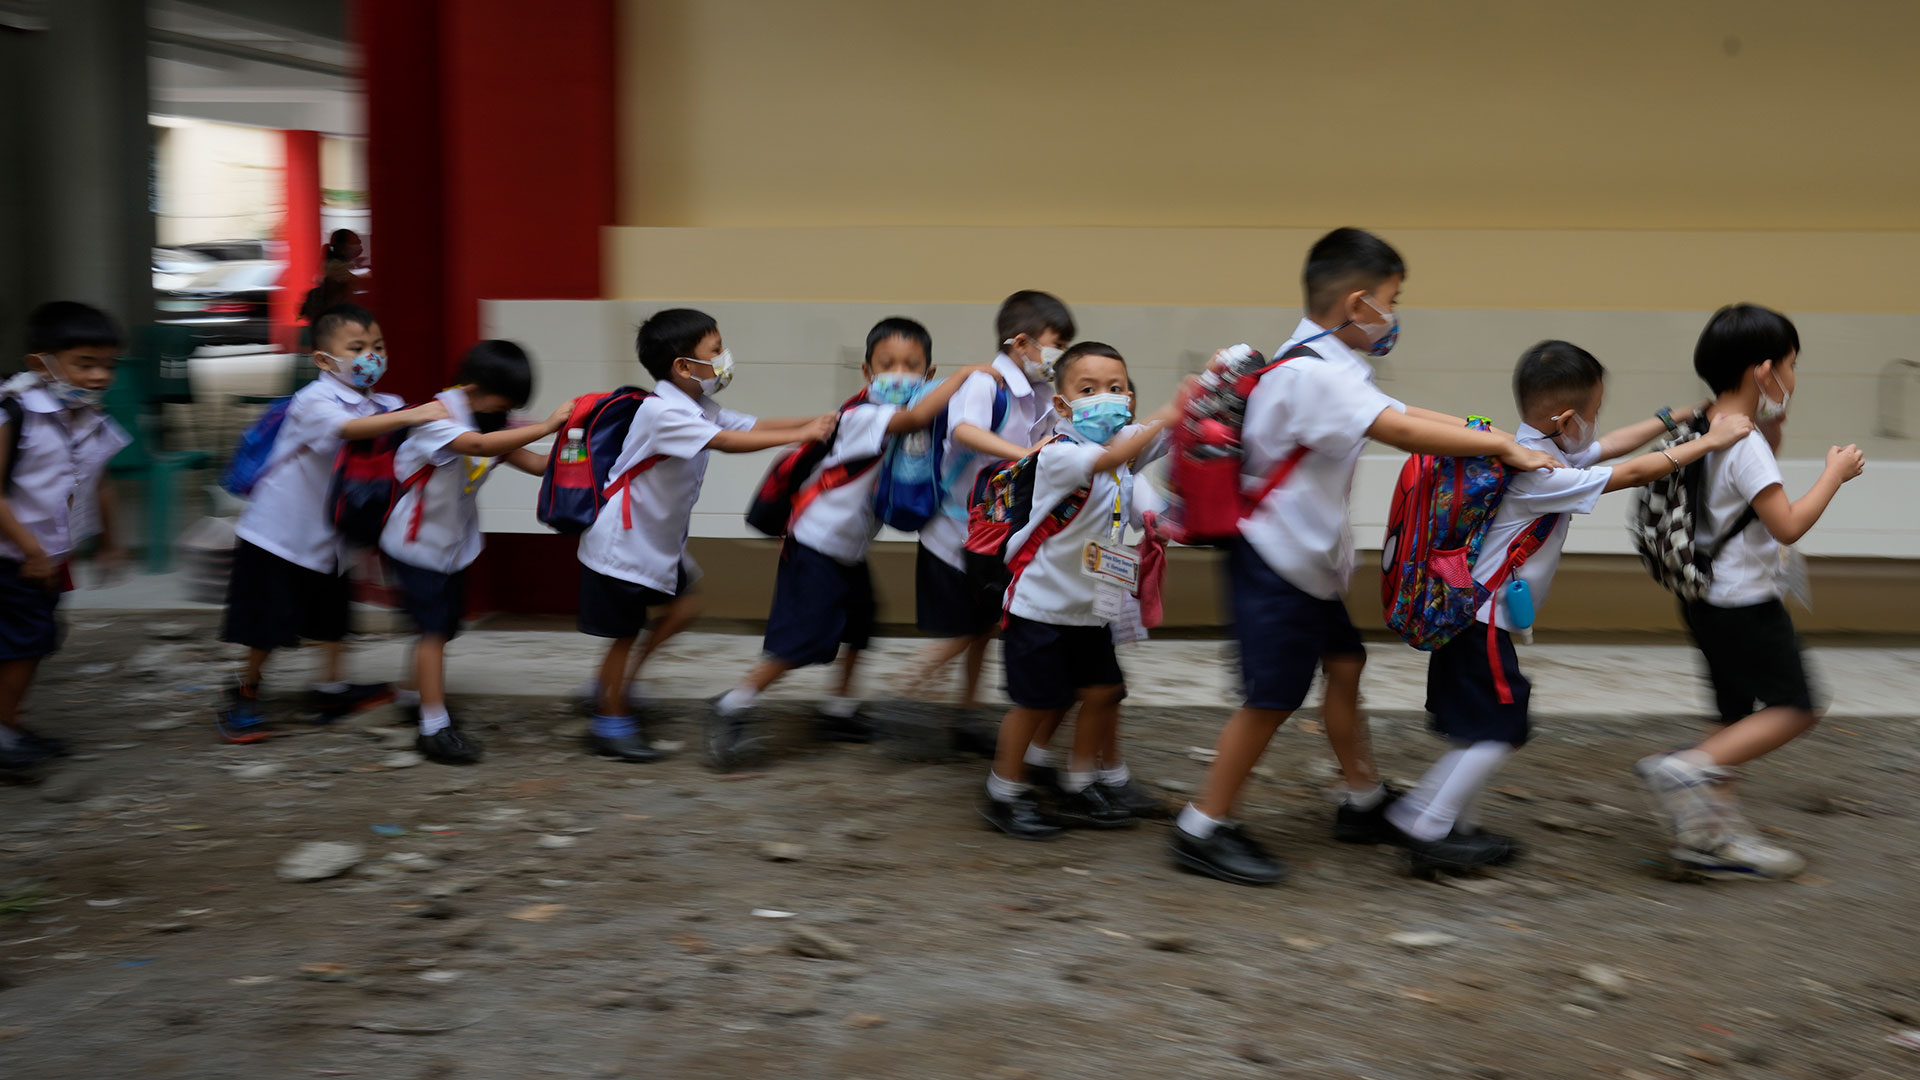 Los estudiantes hacen fila durante la apertura de clases en la Escuela Primaria San Juan en el área metropolitana de Manila, Filipinas, el lunes 22 de agosto de 2022.  (Foto AP/Aarón Favila)

